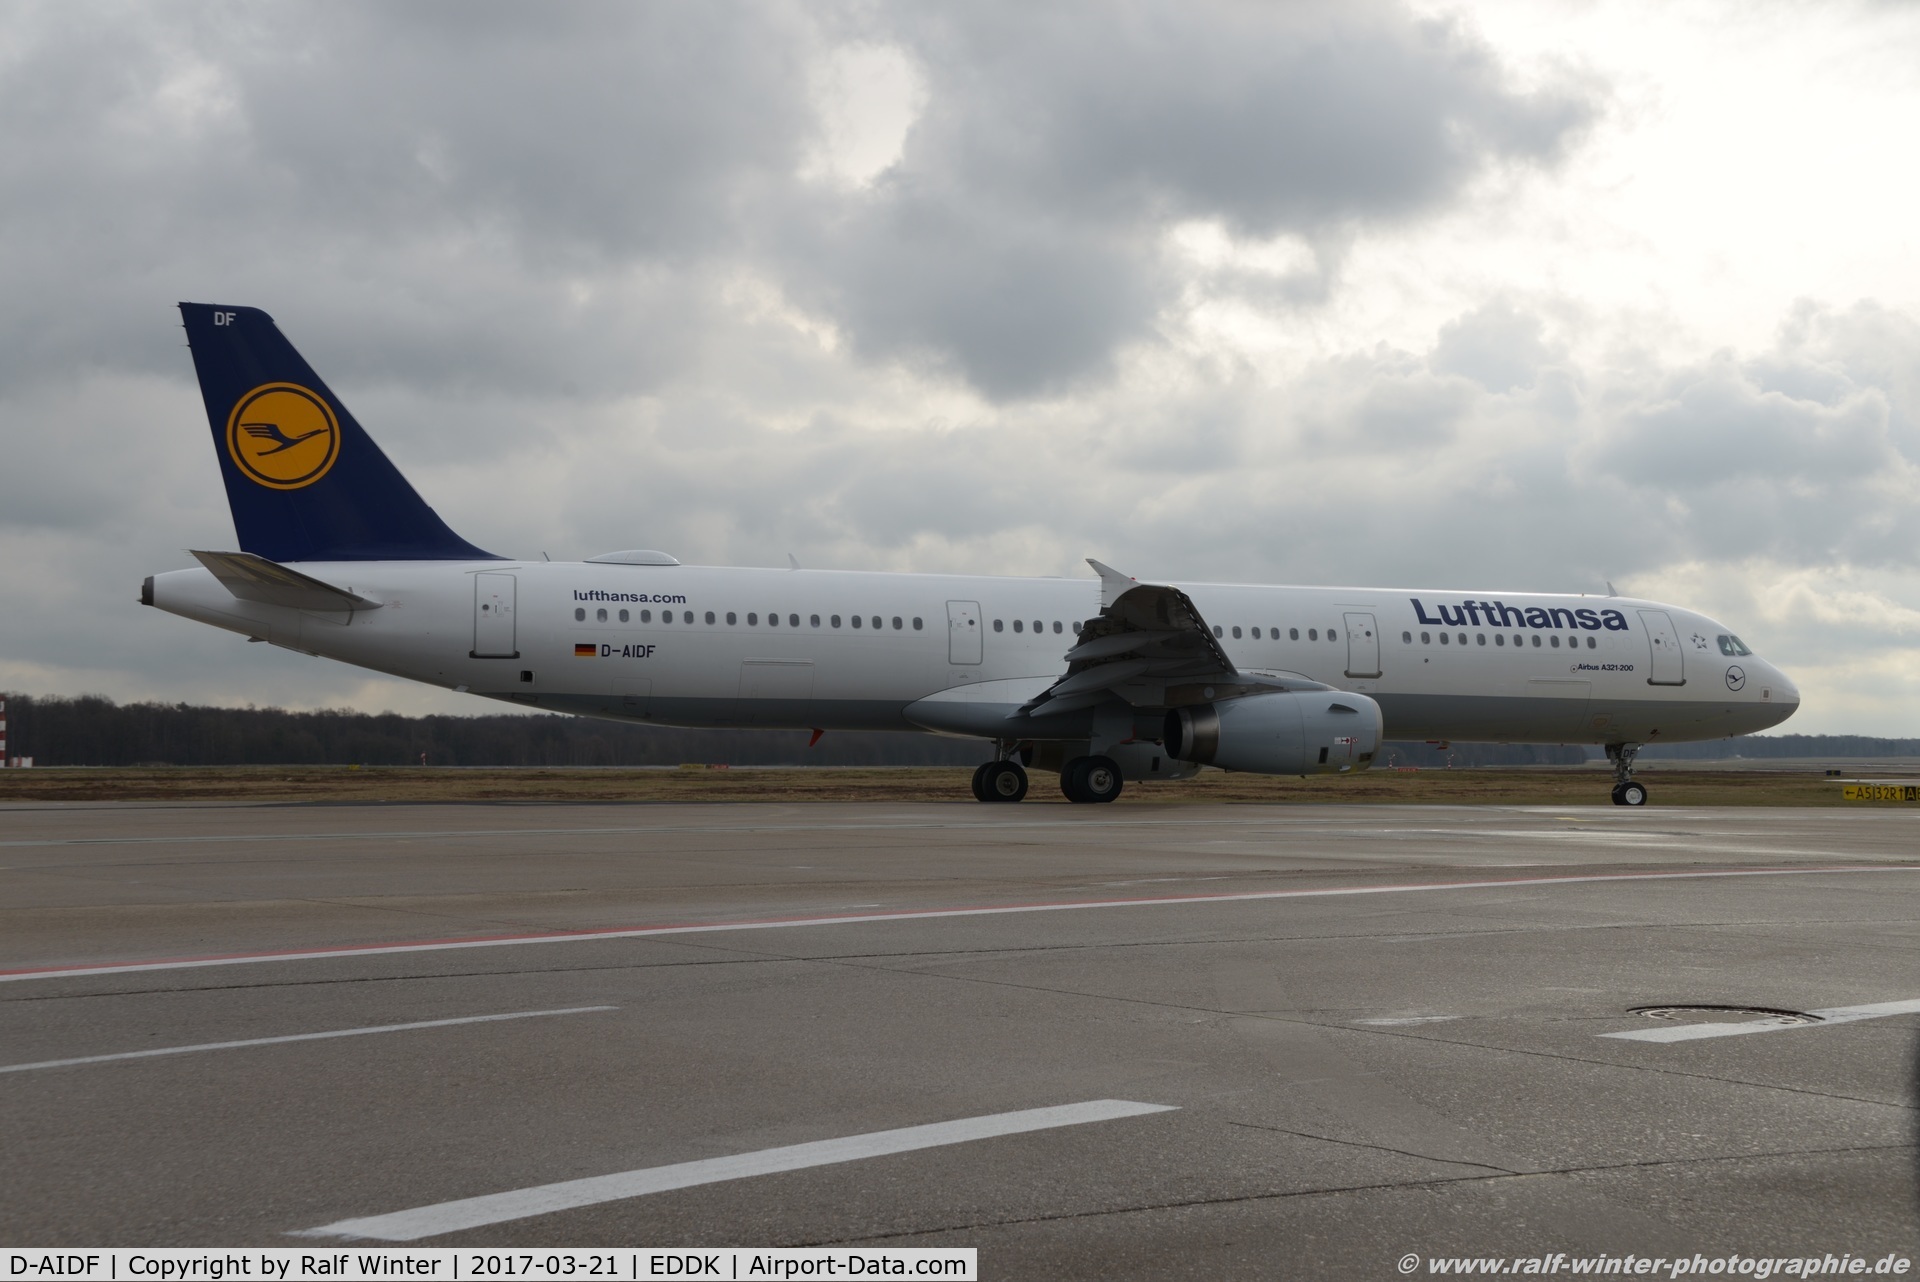 D-AIDF, 2011 Airbus A321-231 C/N 4626, Airbus A321-231 - LH DLH Lufthansa - 4626 - D-AIDF - 21.03.2017 - CGN